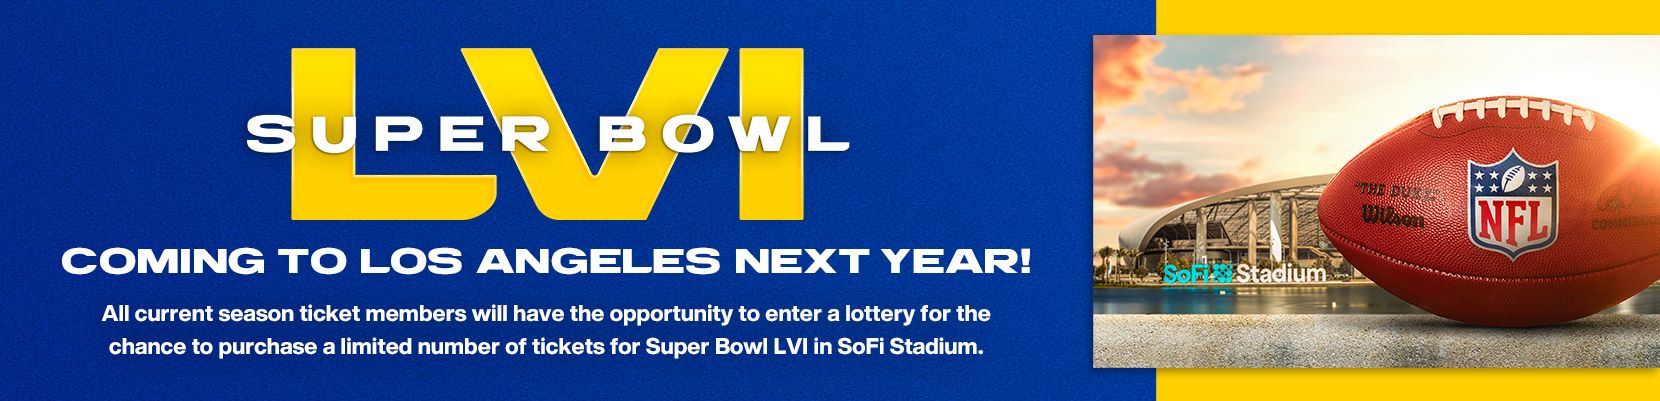 Super Bowl LVI Uniforms, Logos, and More! – SportsLogos.Net News